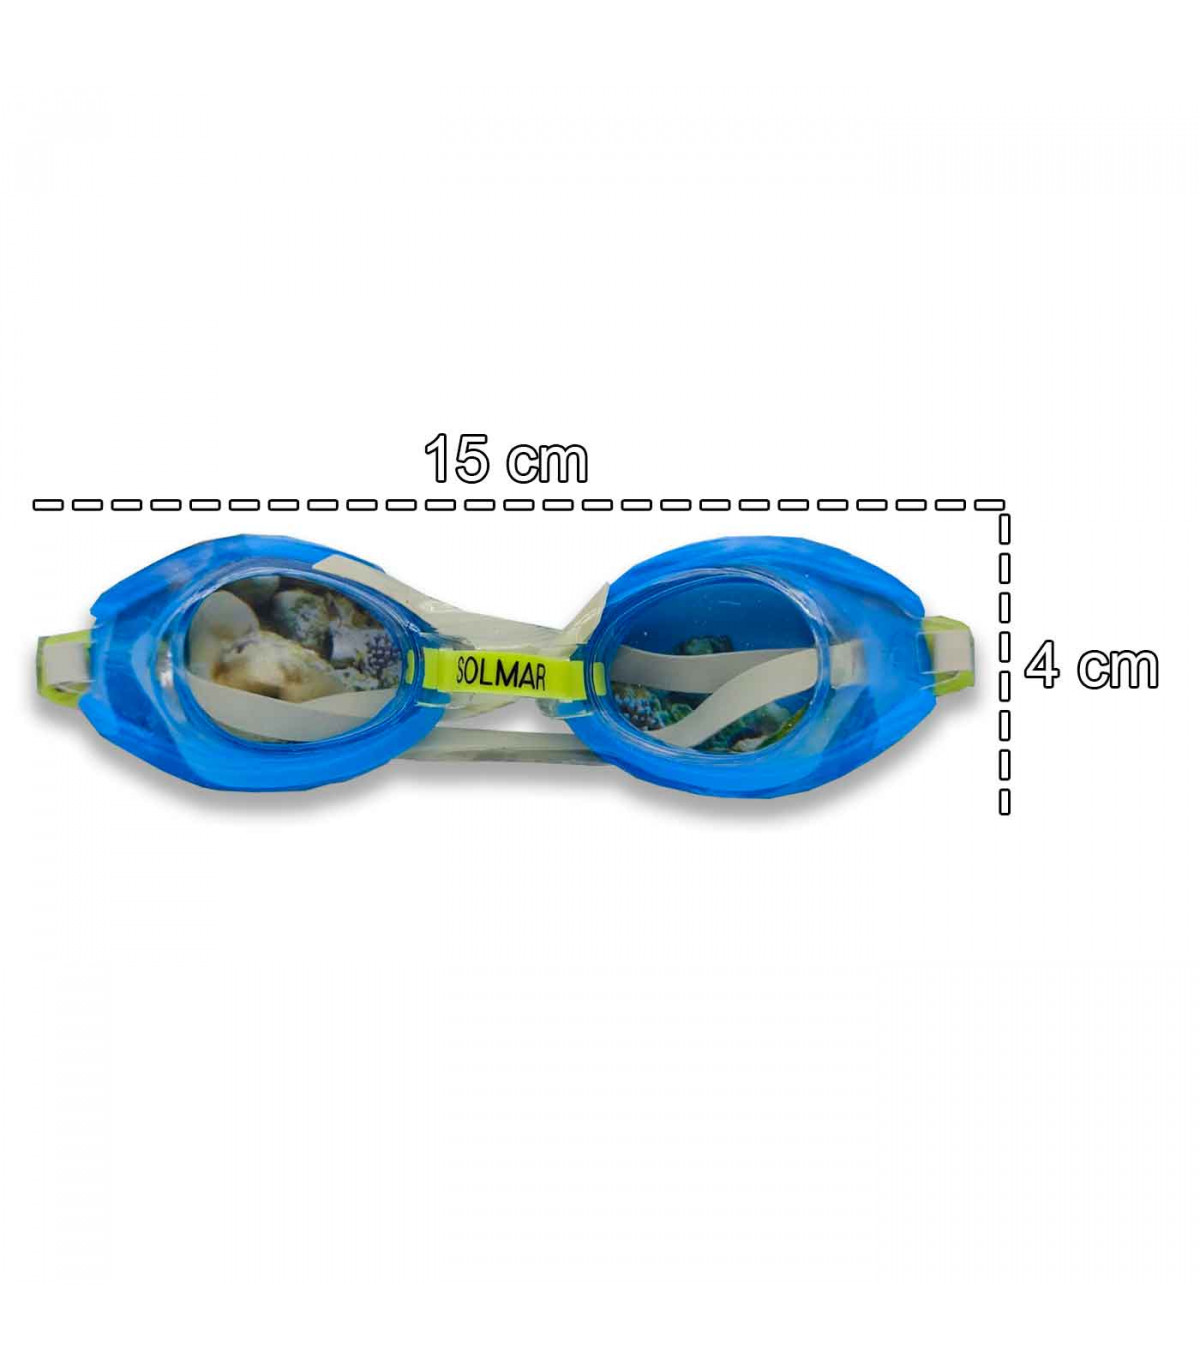 Tradineur - Gafas de buceo natación infantil, ligeras y versátiles,  Fabricadas en PVC, Medida ajustable. Color Surtido. 4 x 15 c